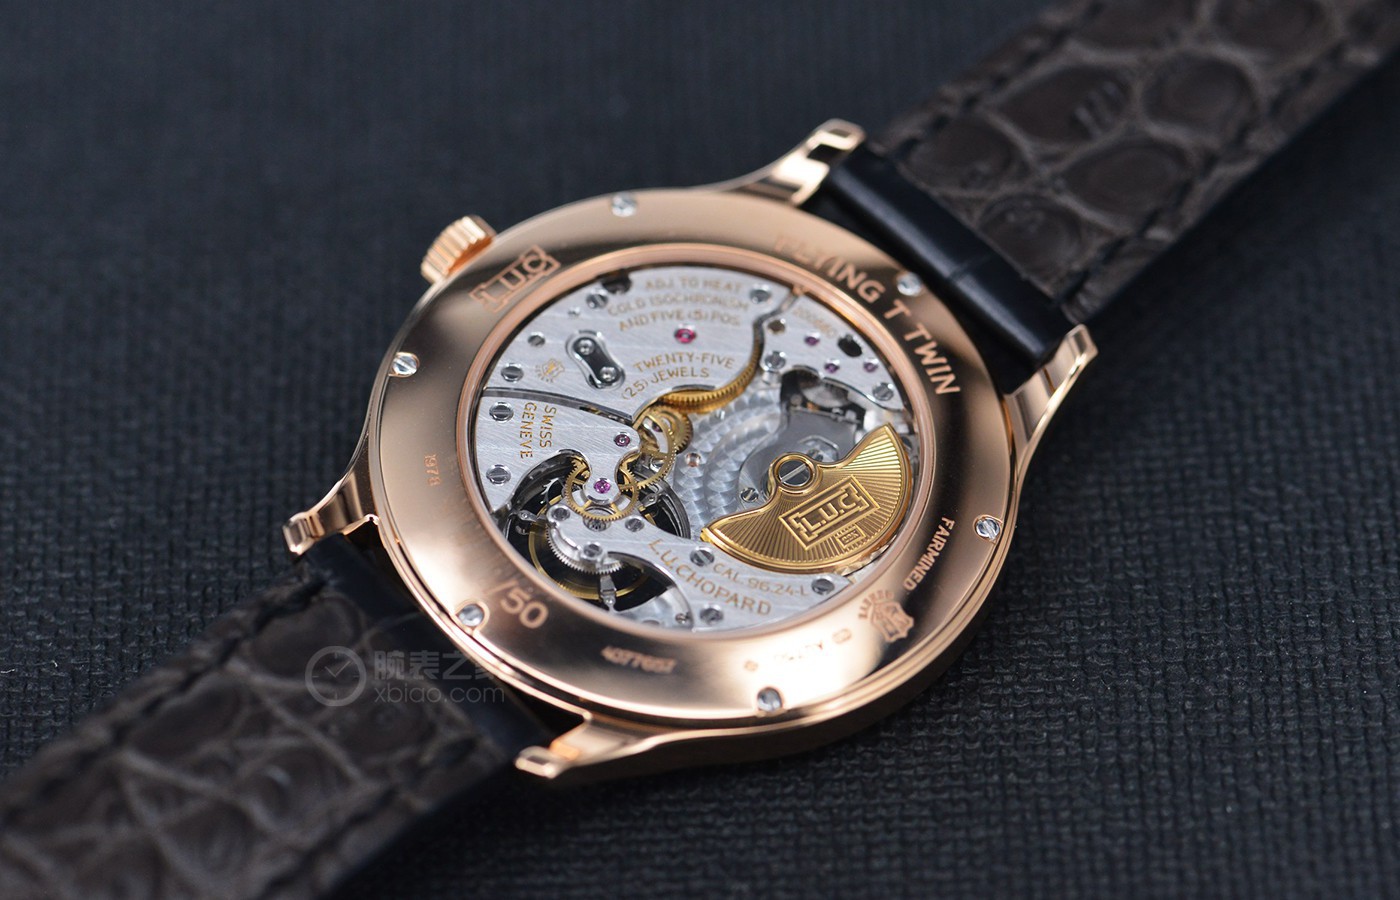 惊艳加工工艺 品评萧邦手表L.U.C系列产品玫瑰金陀飞轮腕表